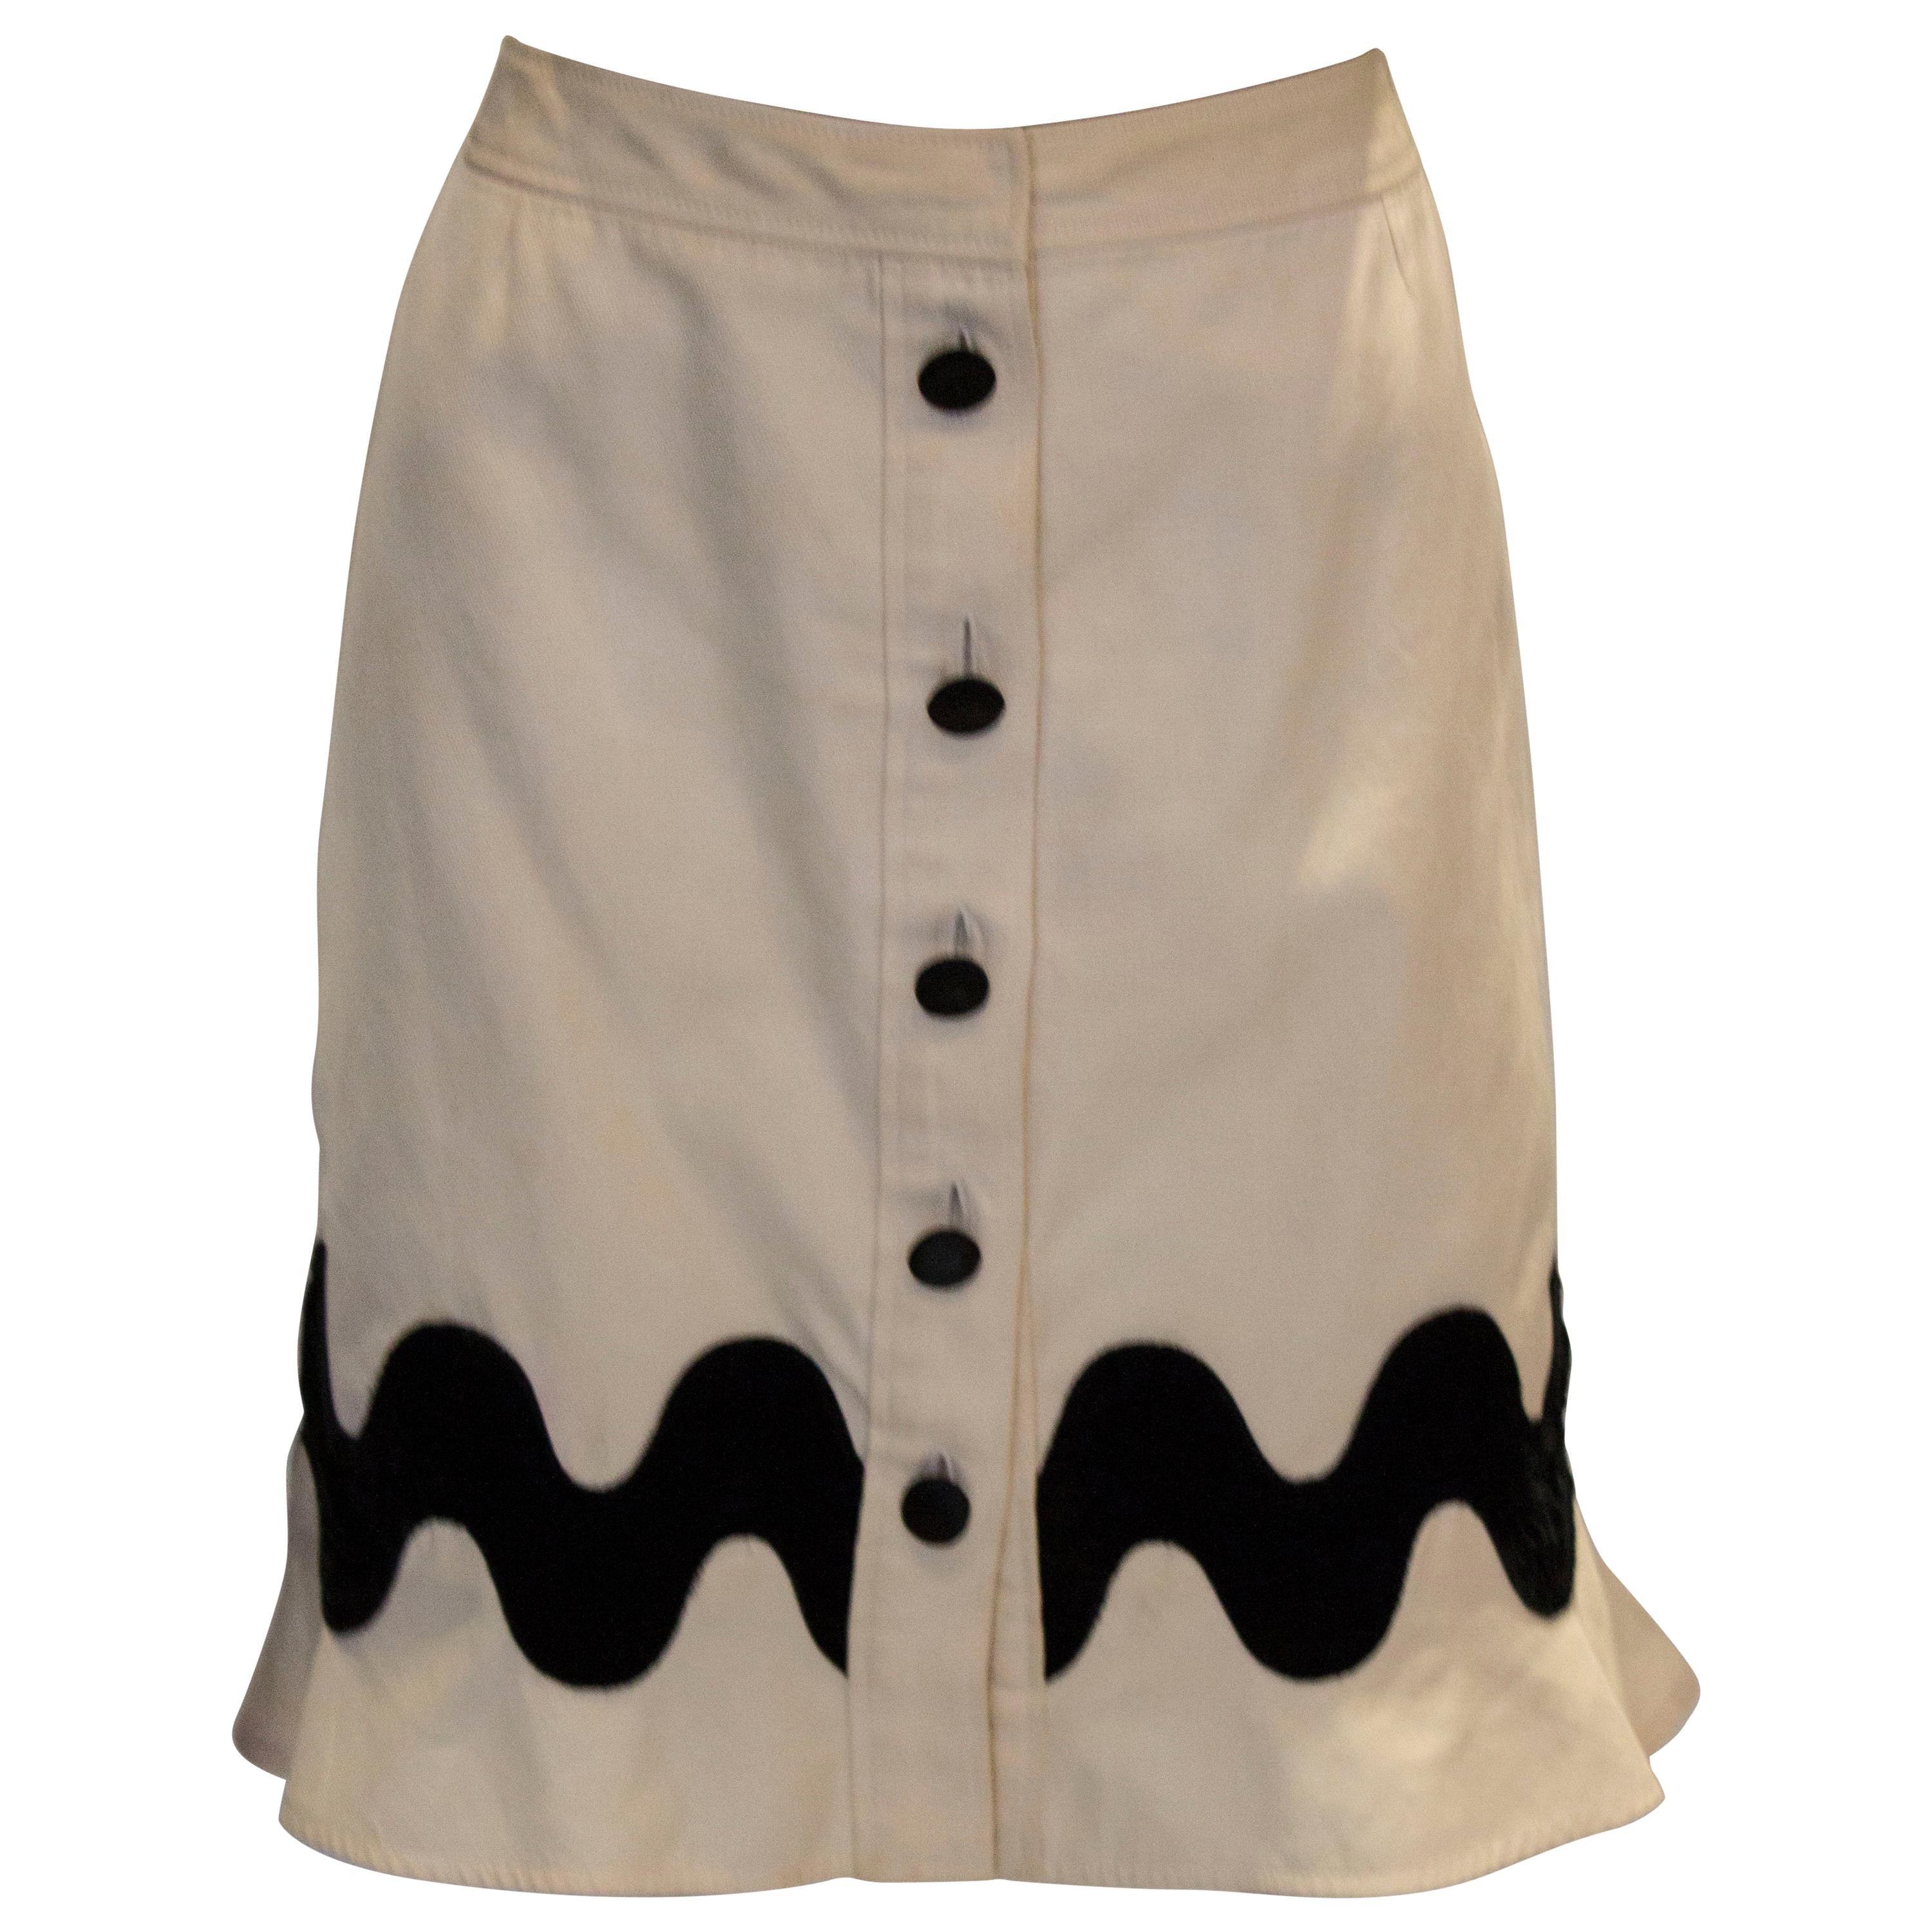  Yves Saint Laurent Rive Gauche White and Black  Skirt For Sale